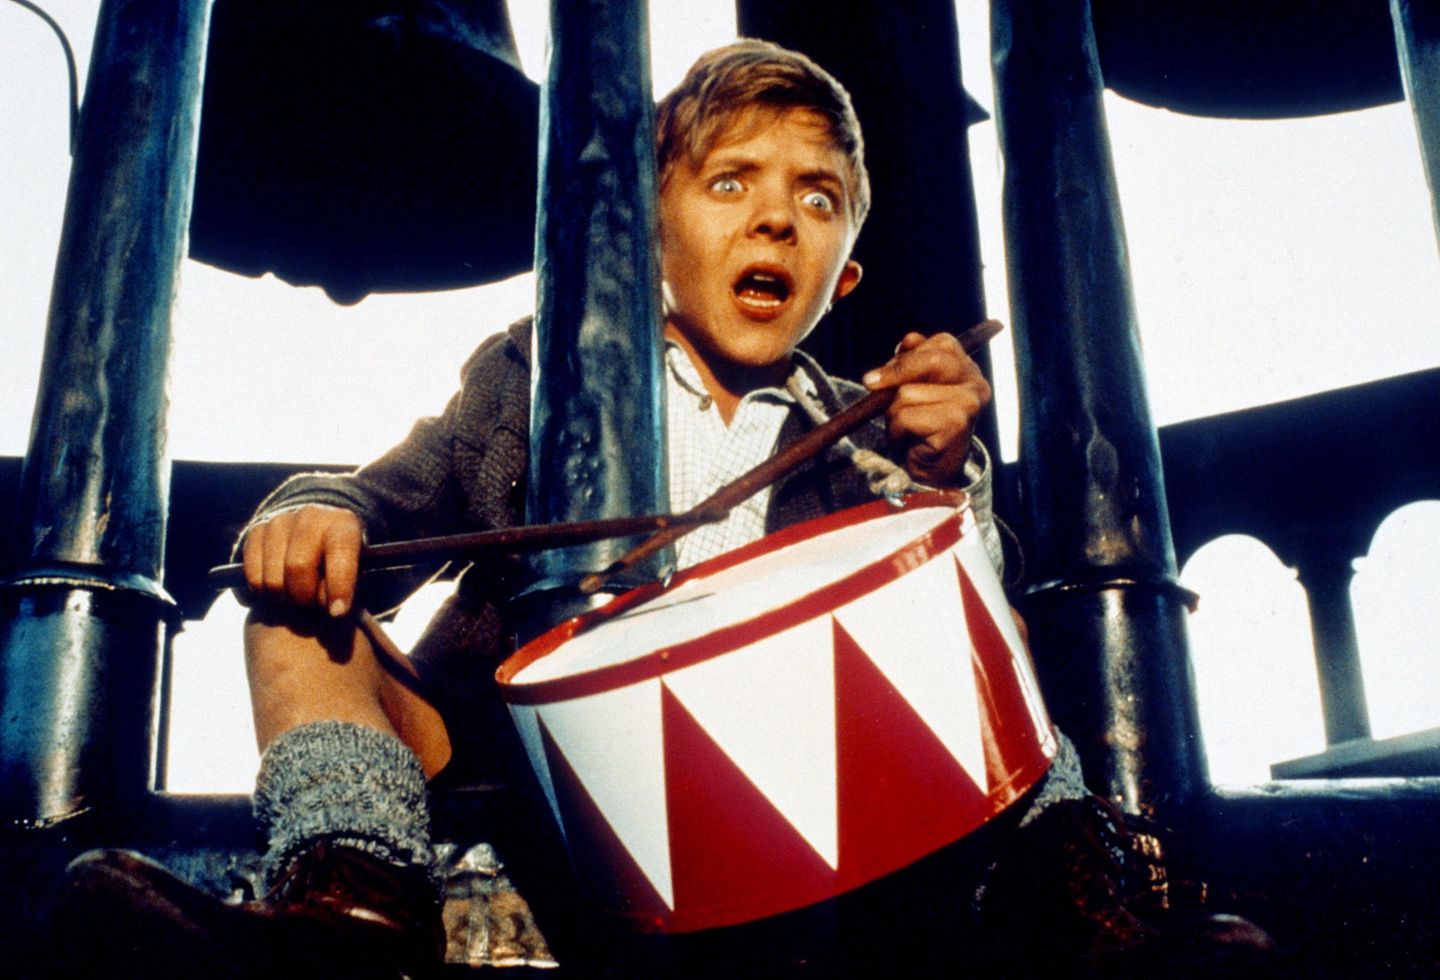 1979 wird der damals 13-jährige David Bennent durch die Verfilmung des Romans "Die Blechtrommel" bekannt. Auch heute noch gehört die Rolle des "Oskar Matzerat" zu Davids bekanntesten Auftritten in Film und Fernsehen. 